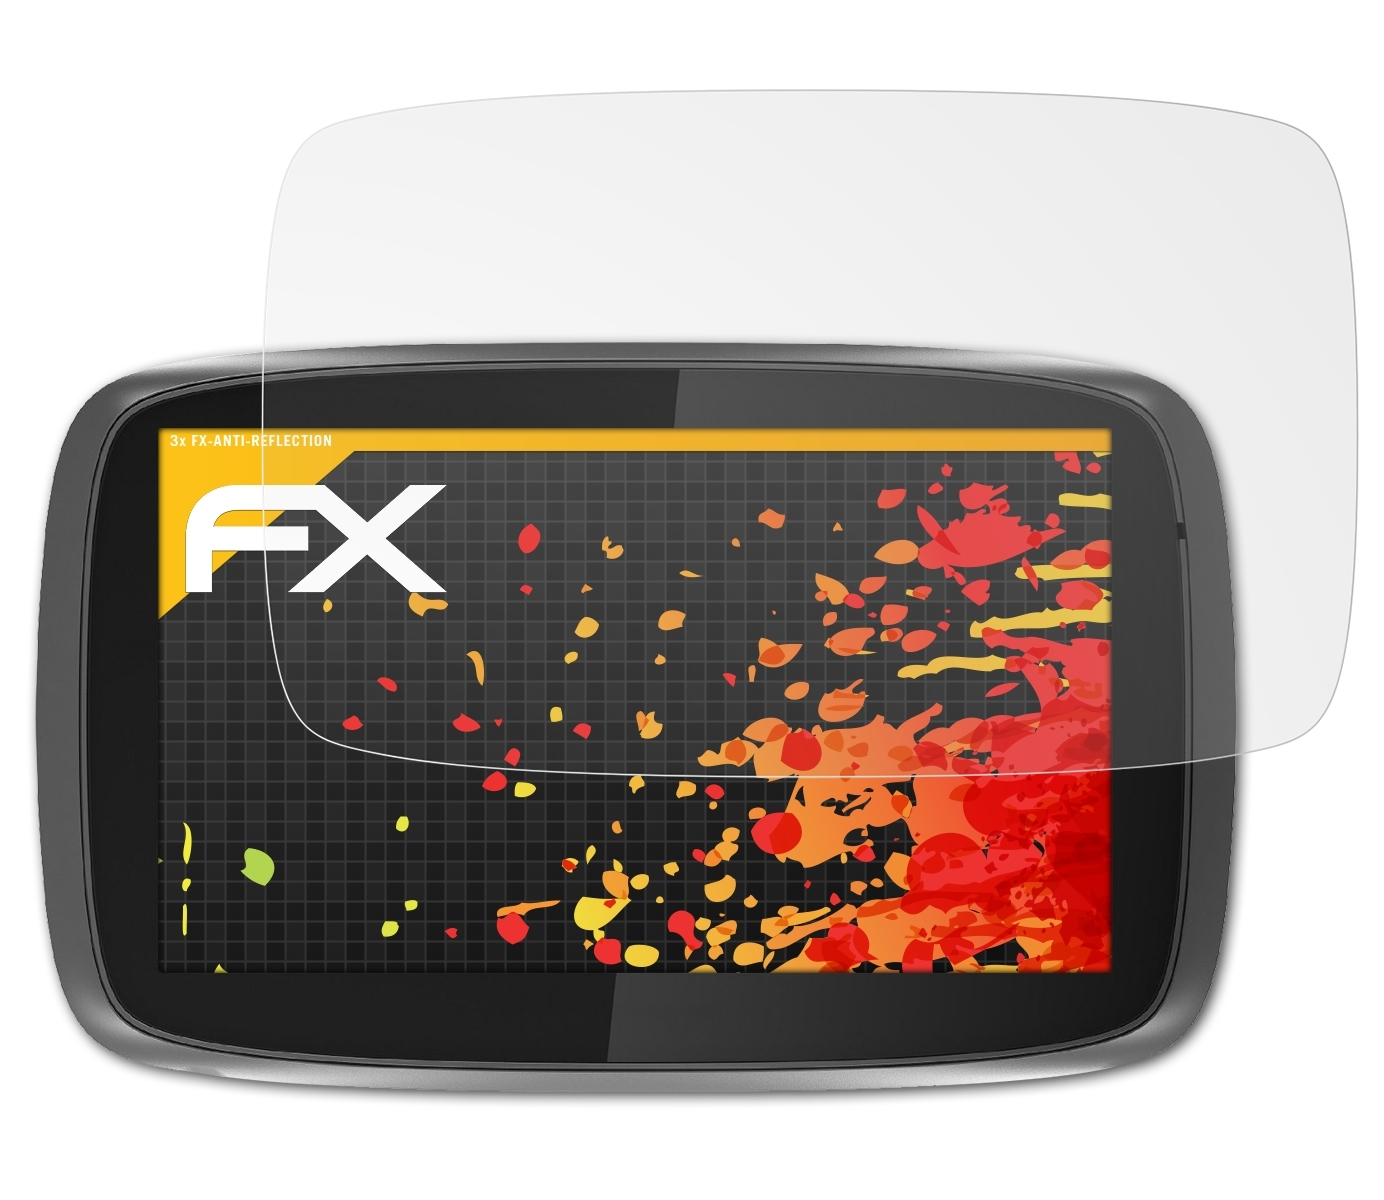 ATFOLIX 3x FX-Antireflex Displayschutz(für TomTom GO 510 (2015)) / 5100